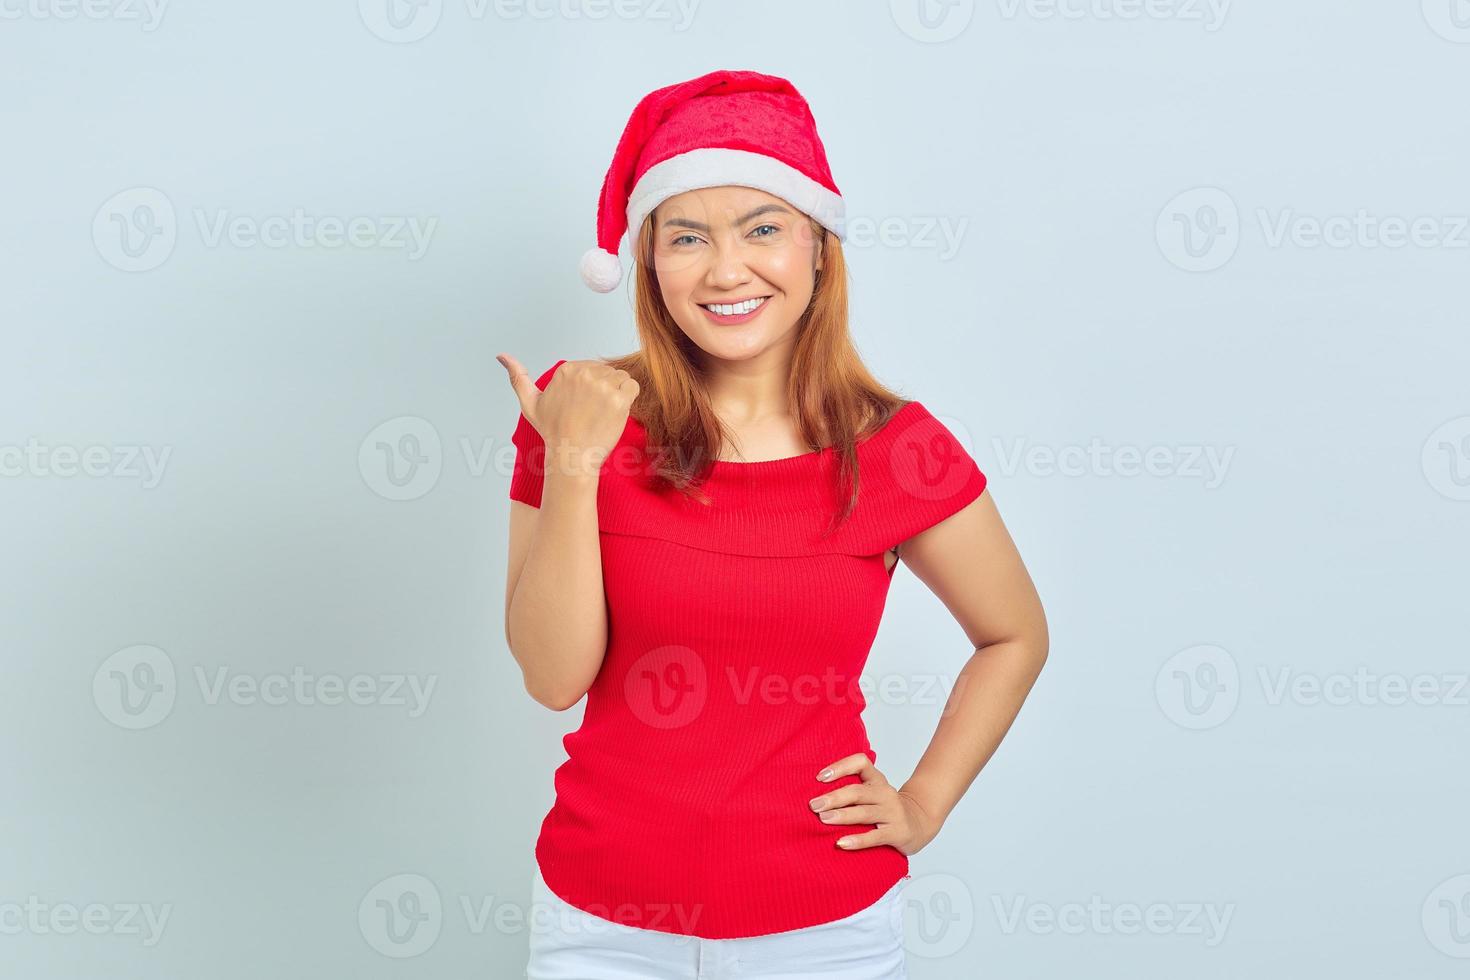 foto av vacker asiatisk tjej i julhatt med leende ansiktsuttryck och pekar åt sidan på vit bakgrund